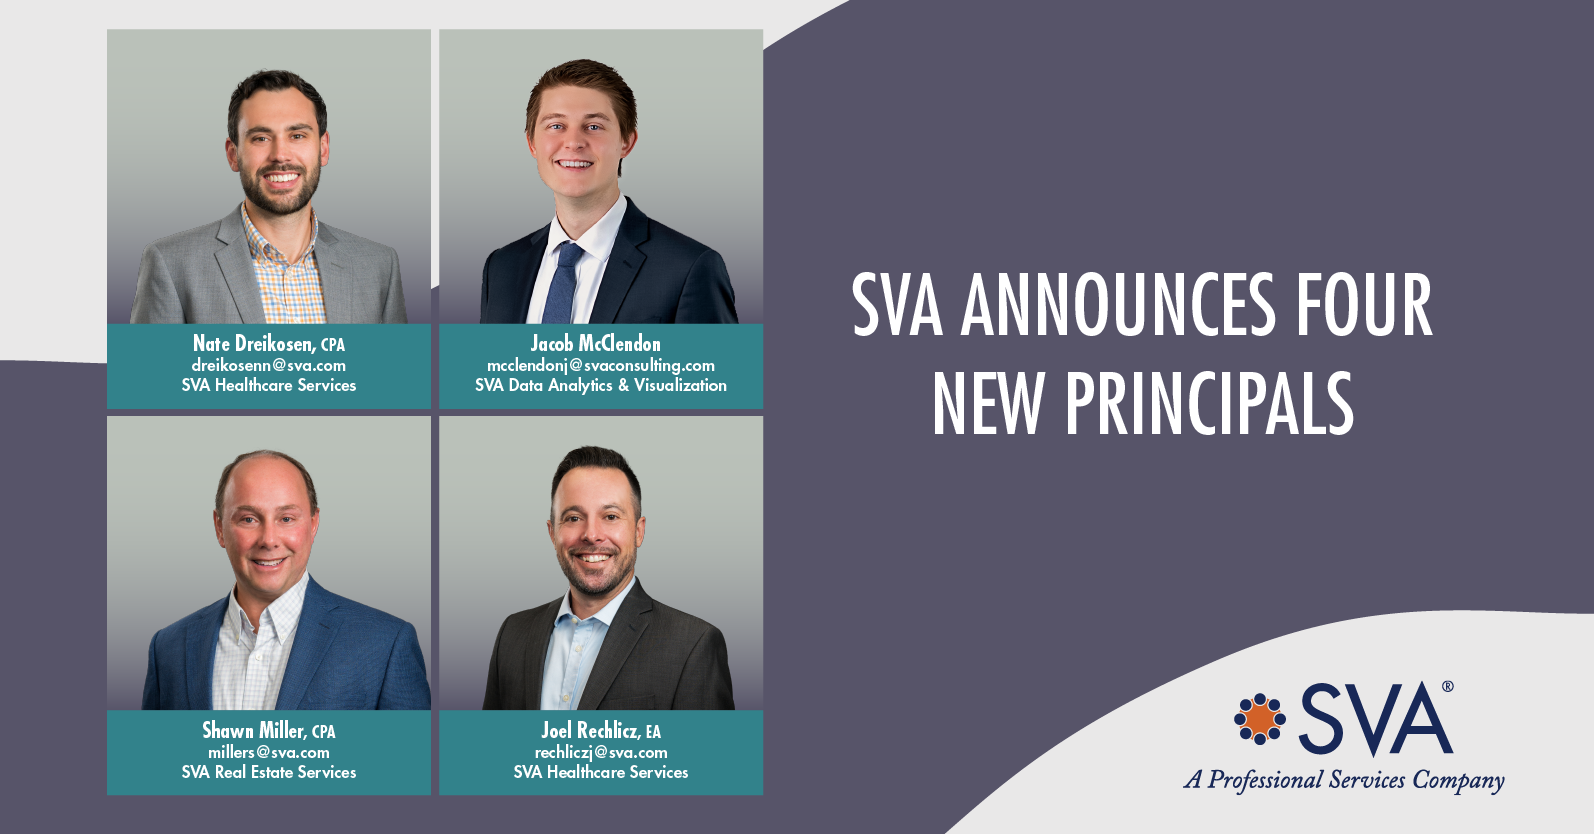 sva-announces-four-new-principals